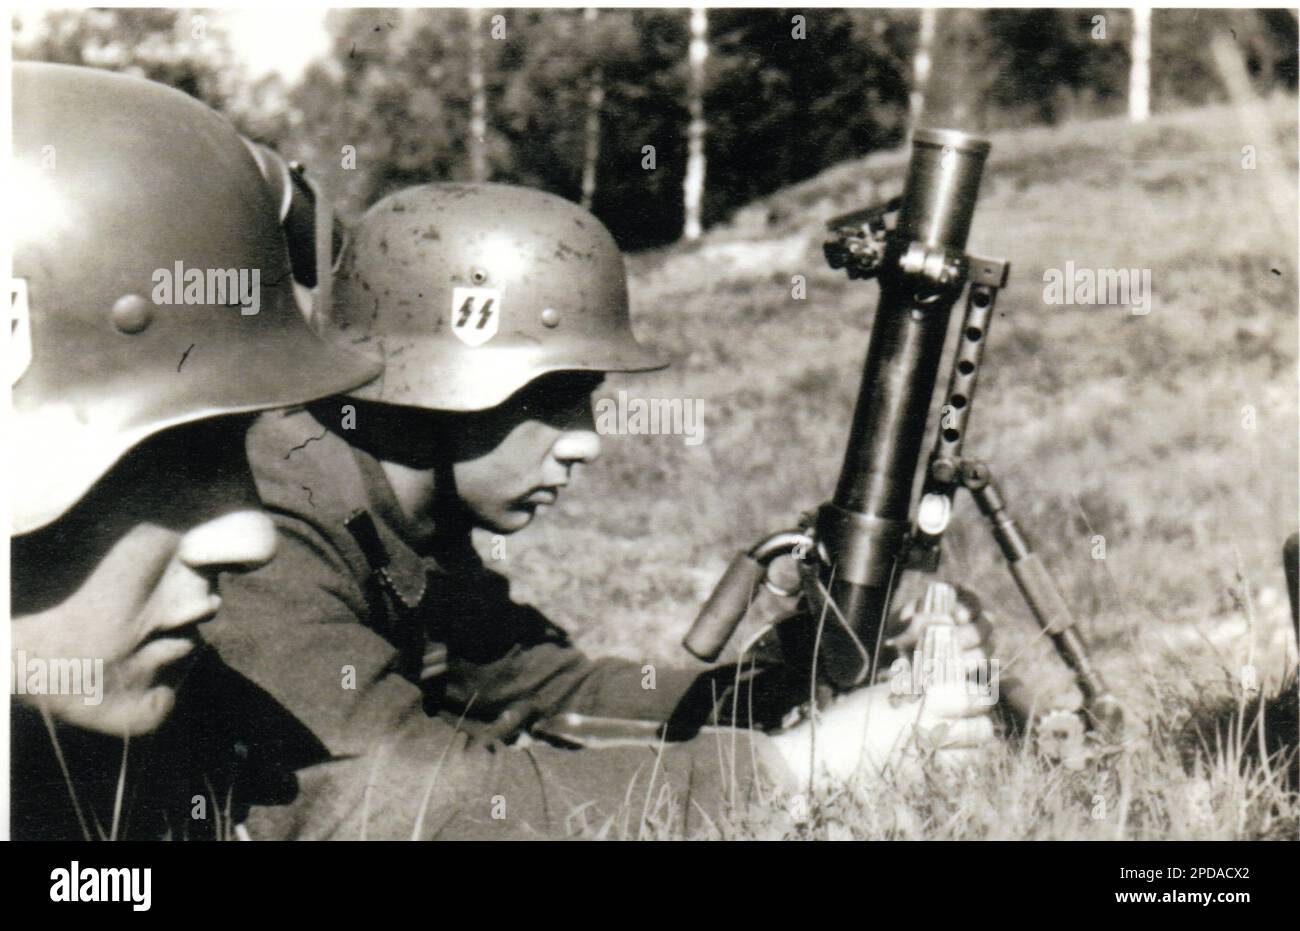 Photo de la Seconde Guerre mondiale des soldats allemands de l'unité Waffen SS sur un Mortar de 5cm en 1941 Banque D'Images